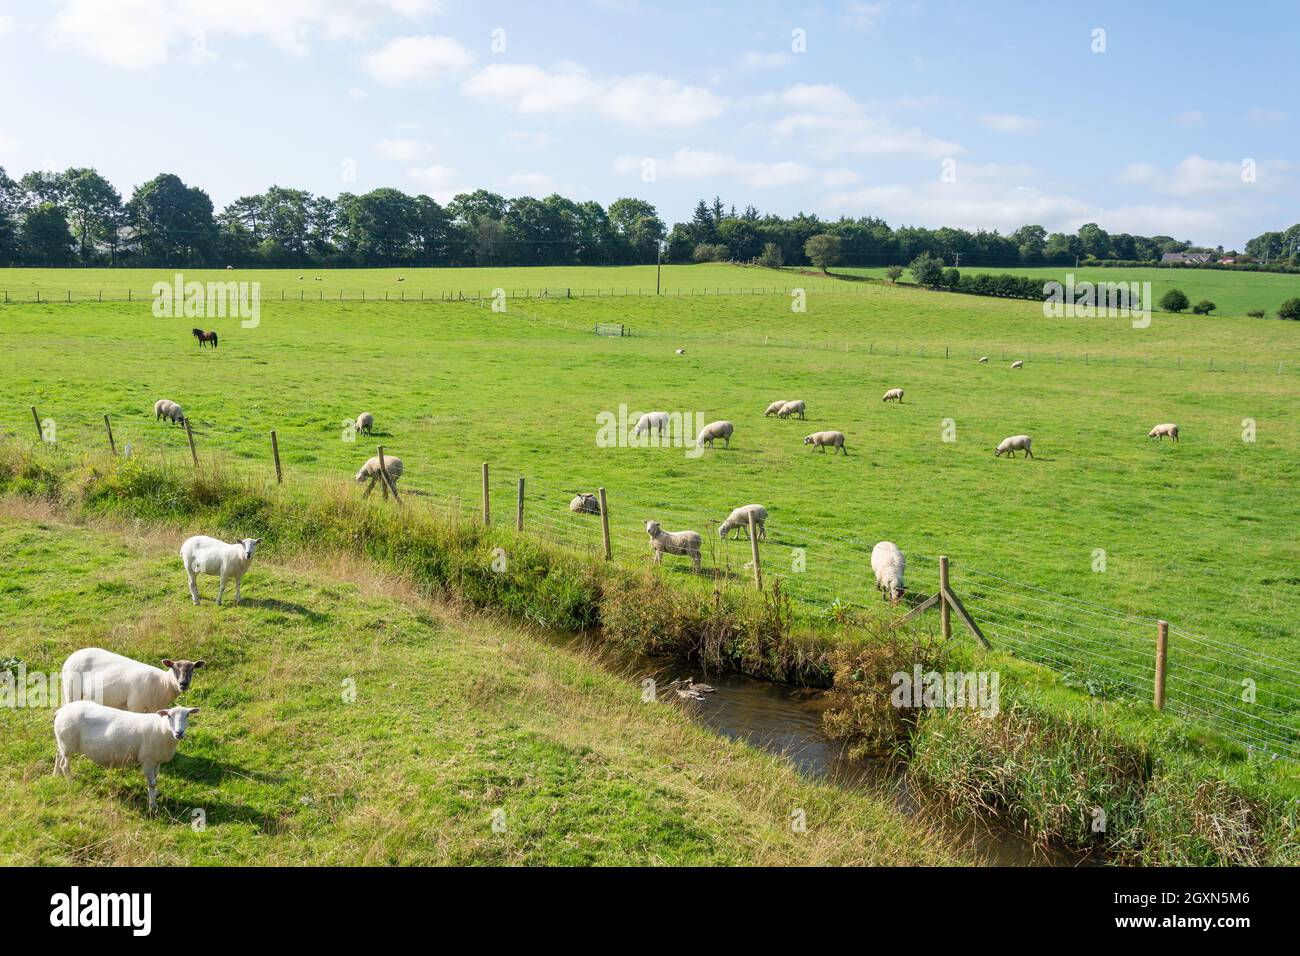 Sheep in field, Vale of Clwyd, Denbighshire (Sir Ddinbych), Wales, United Kingdom Stock Photo